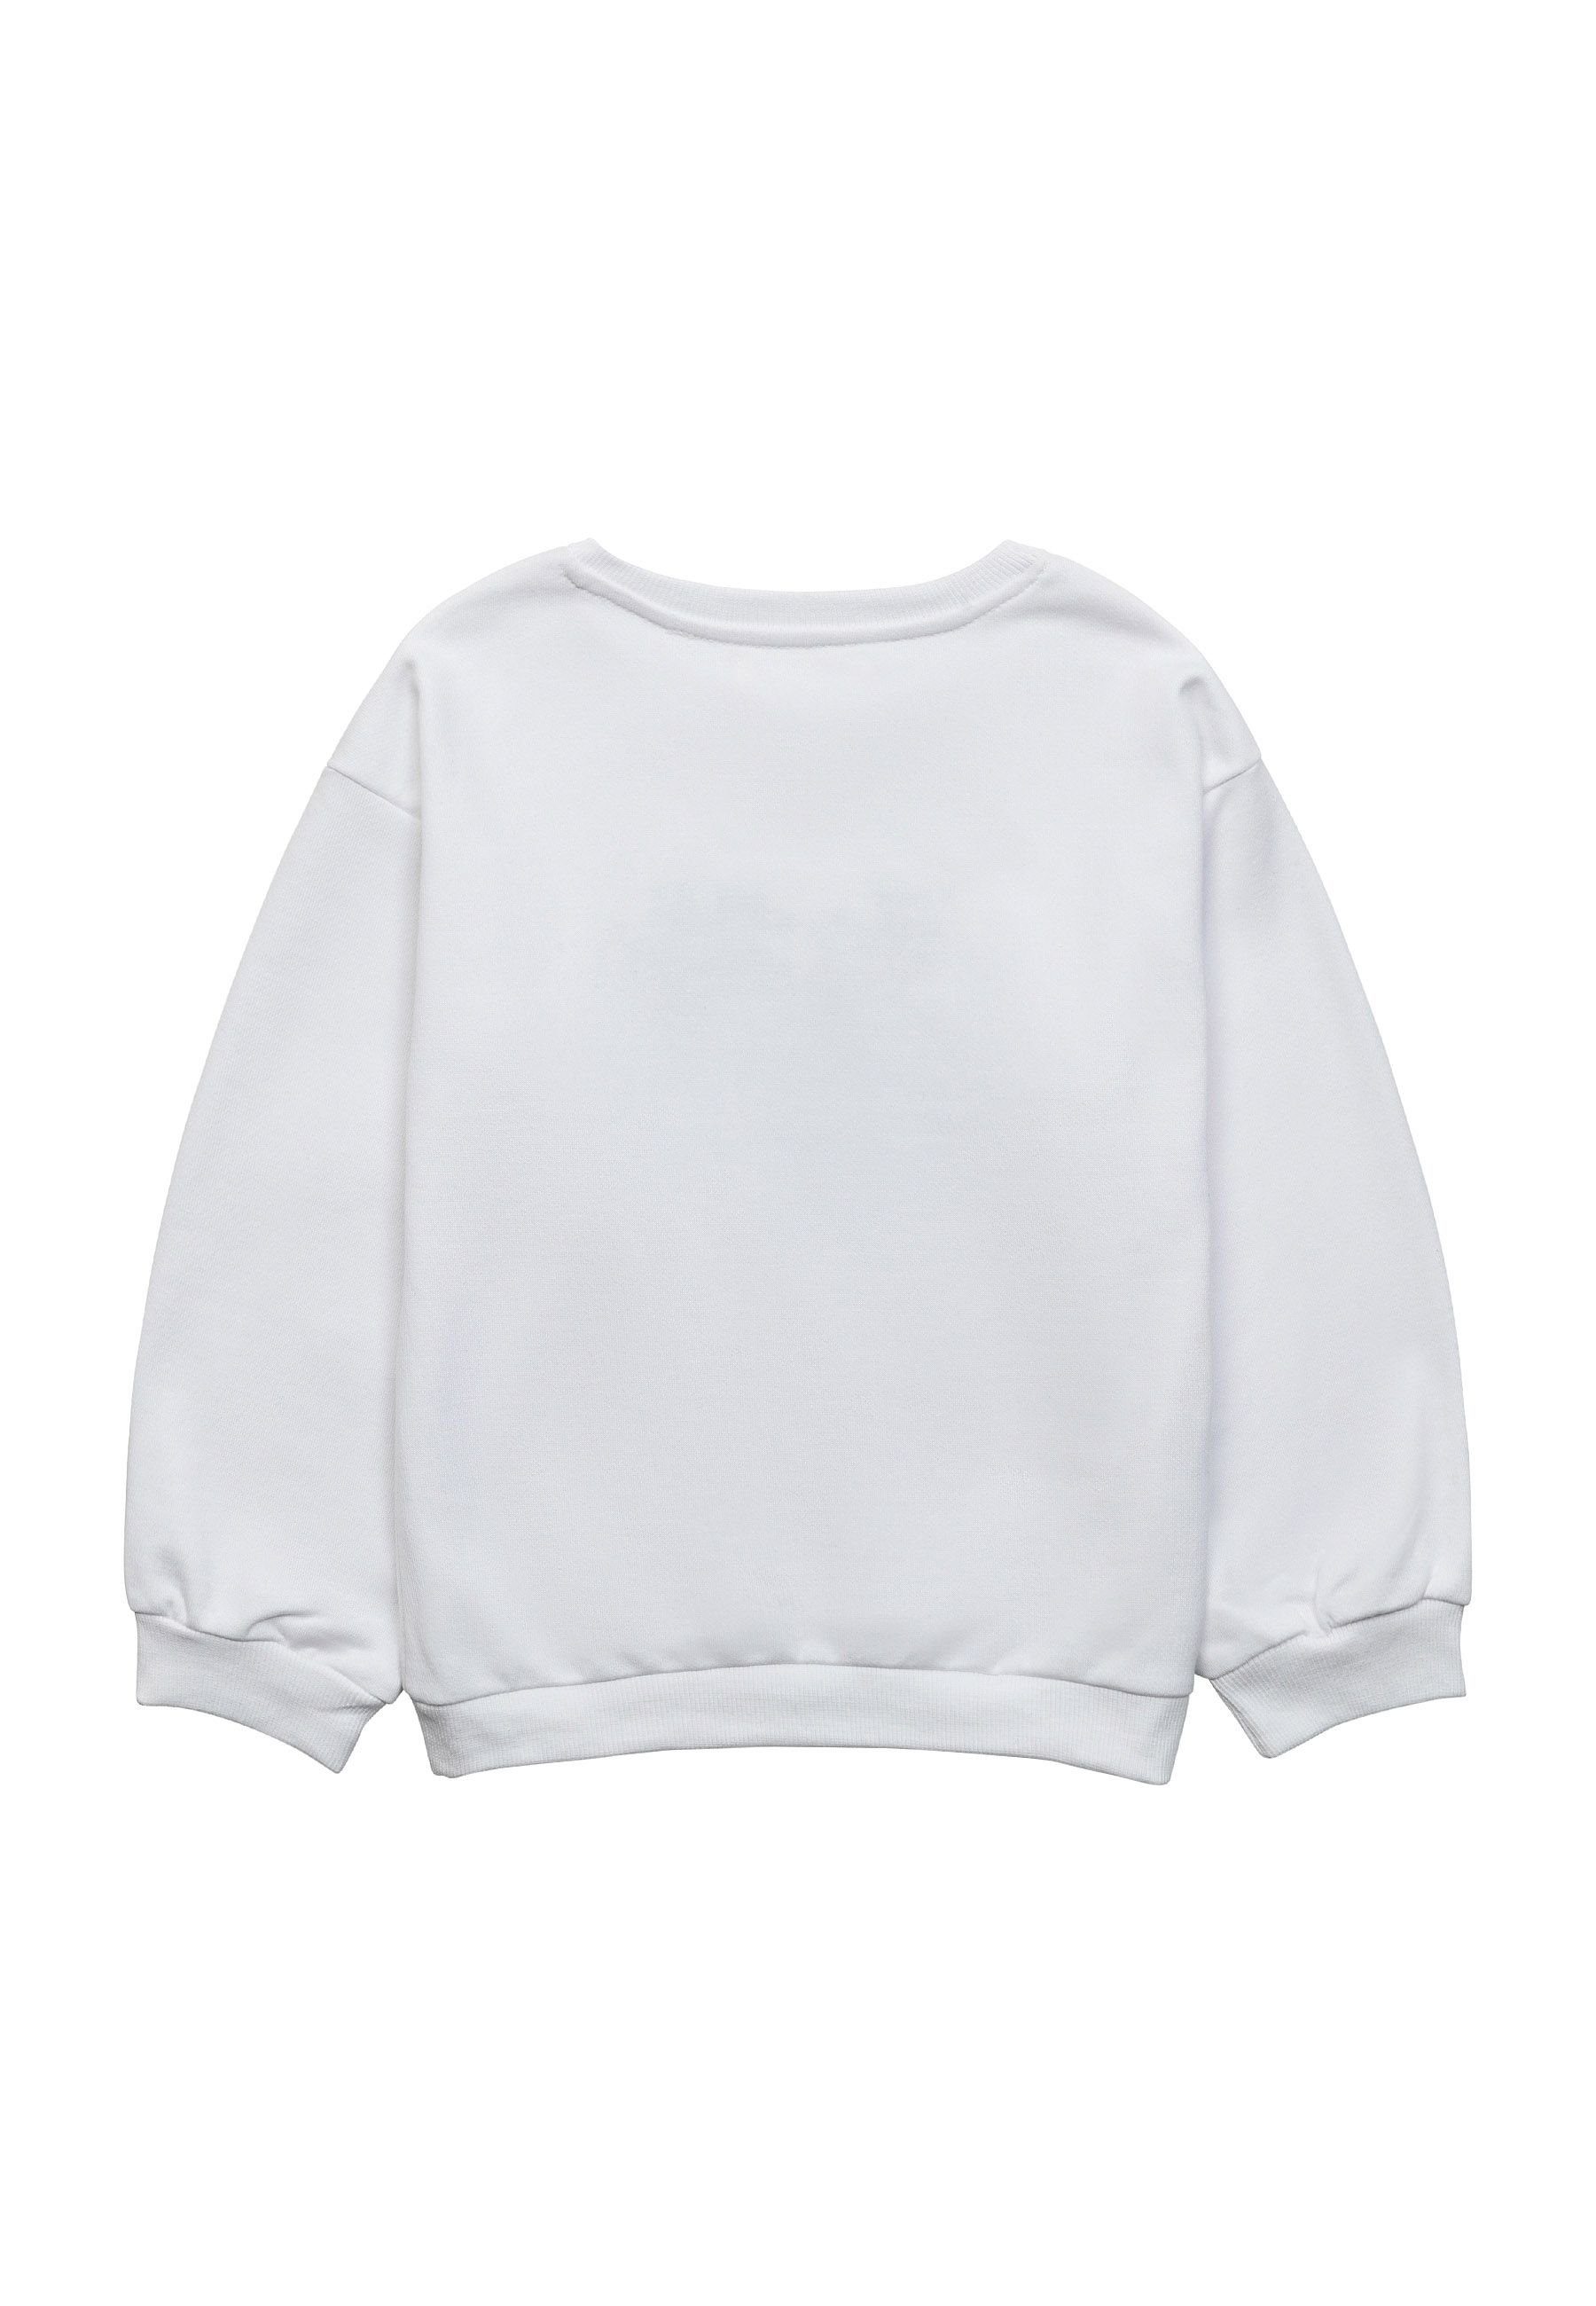 MINOTI Sweatshirt Muster Weiß (3y-14y) Sweatshirt mit Modische